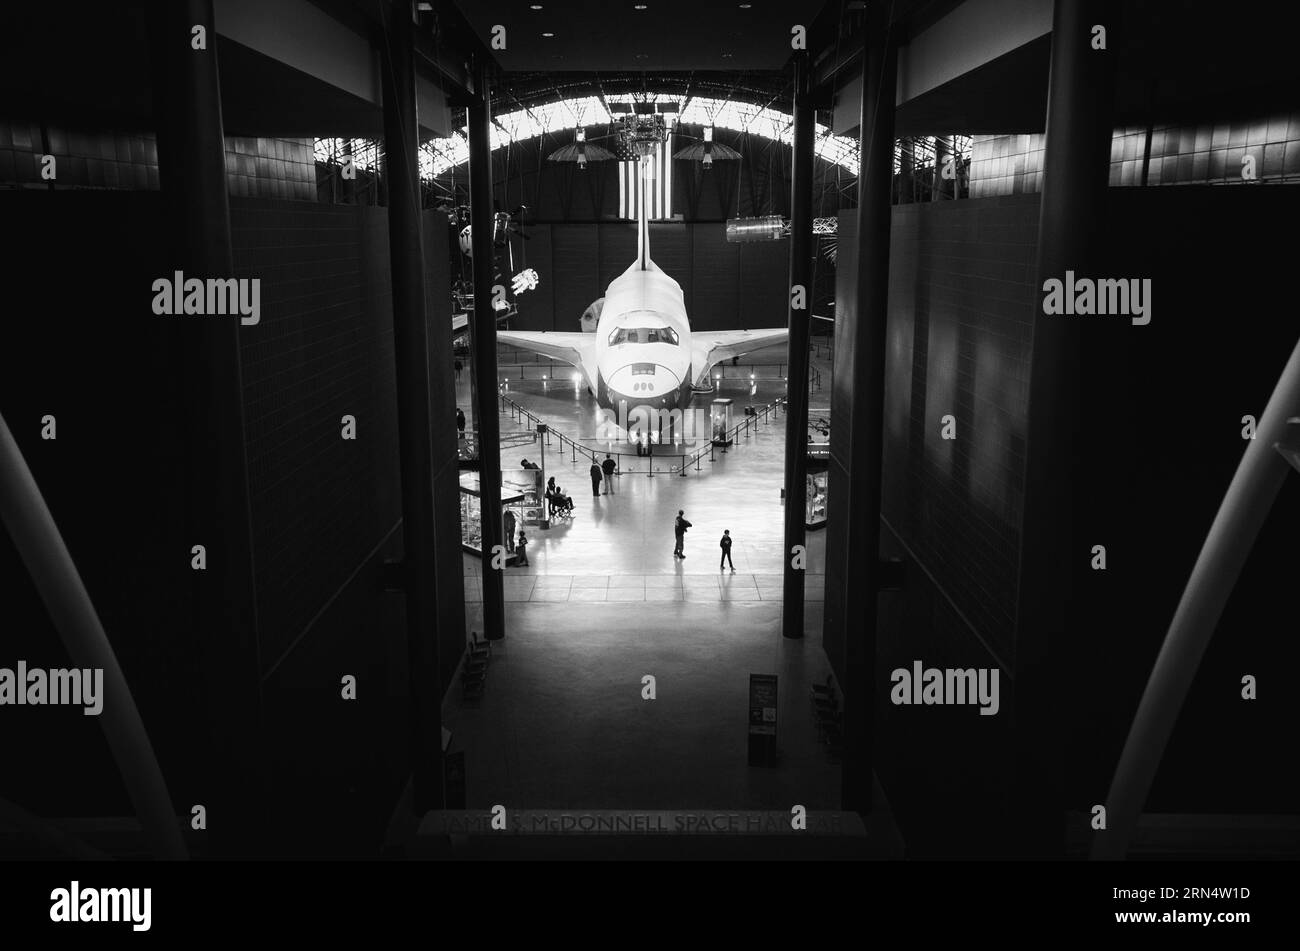 CHANTILLY, Virginia, Stati Uniti - lo Space Shuttle Discovery è in mostra presso l'Udvar-Hazy Center, un annesso dello Smithsonian National Air and Space Museum. Come una delle navette di punta della NASA, Discovery completò 39 missioni oltre 27 anni prima del suo ritiro. Foto Stock